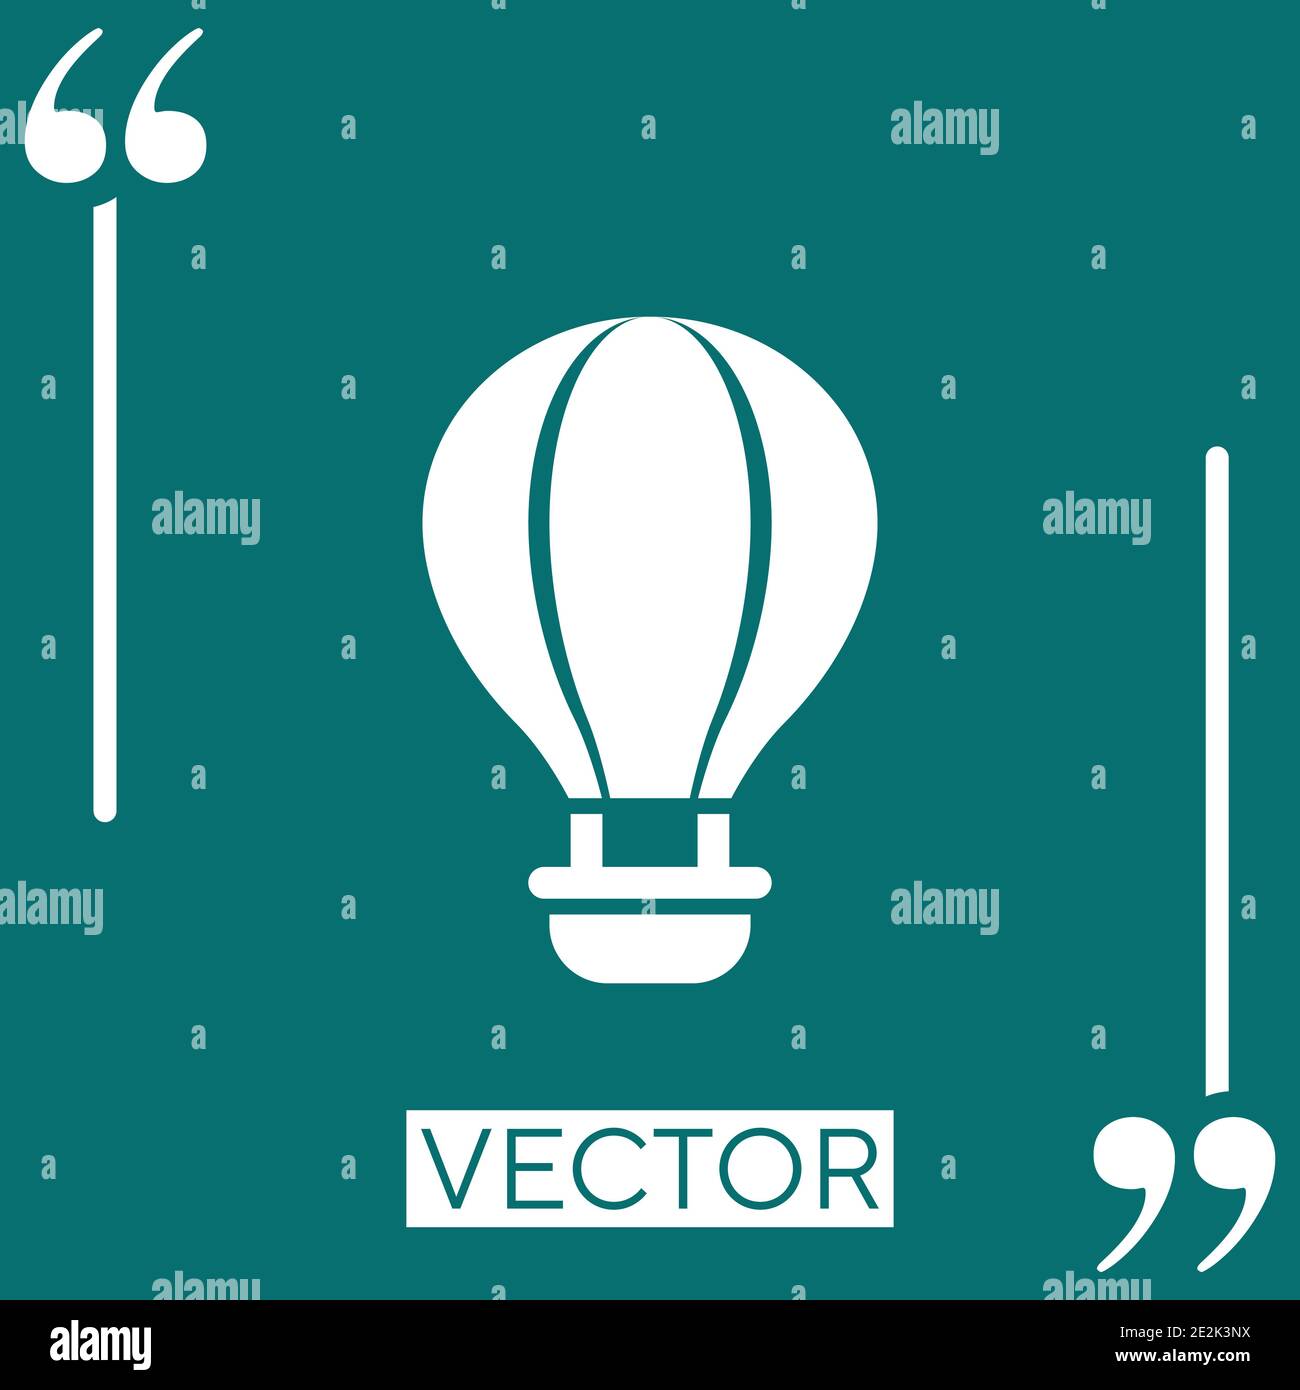 air balloon vector icon Linear icon. Editable stroke line Stock Vector